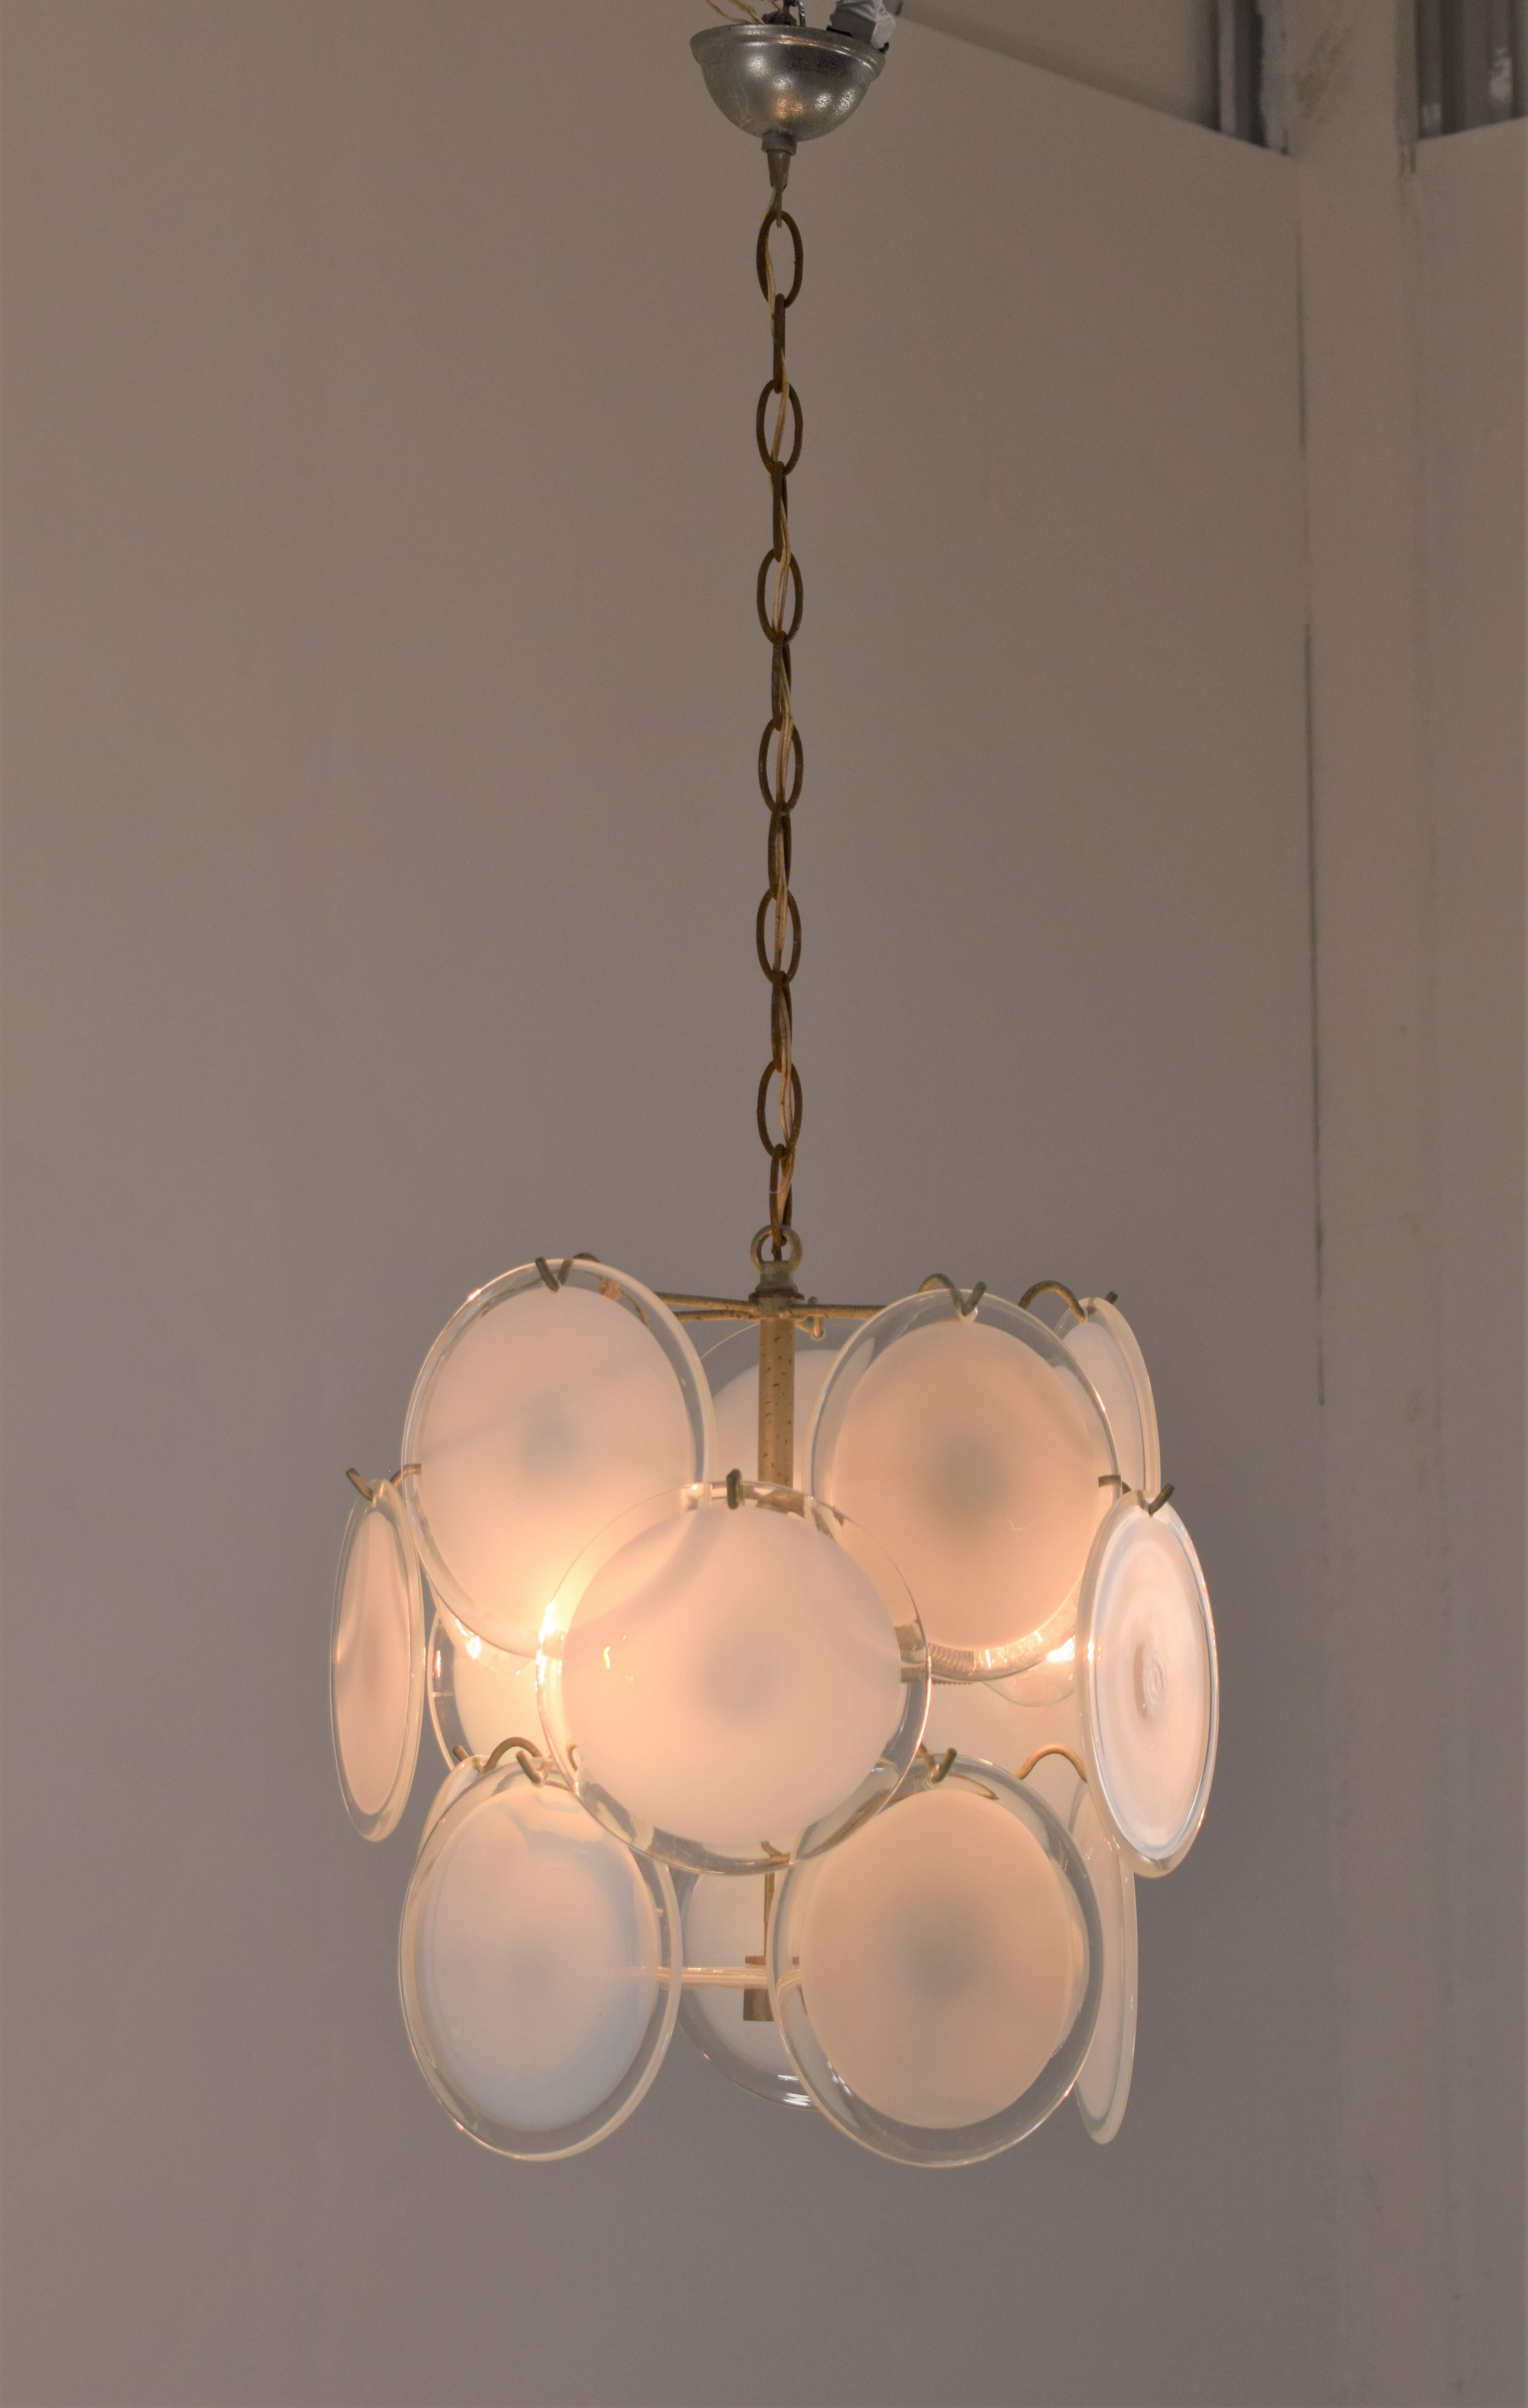 Vistosi chandelier, 1960s
Dimensions: H= 85 cm; D= 40 cm; D glass= 14 cm.